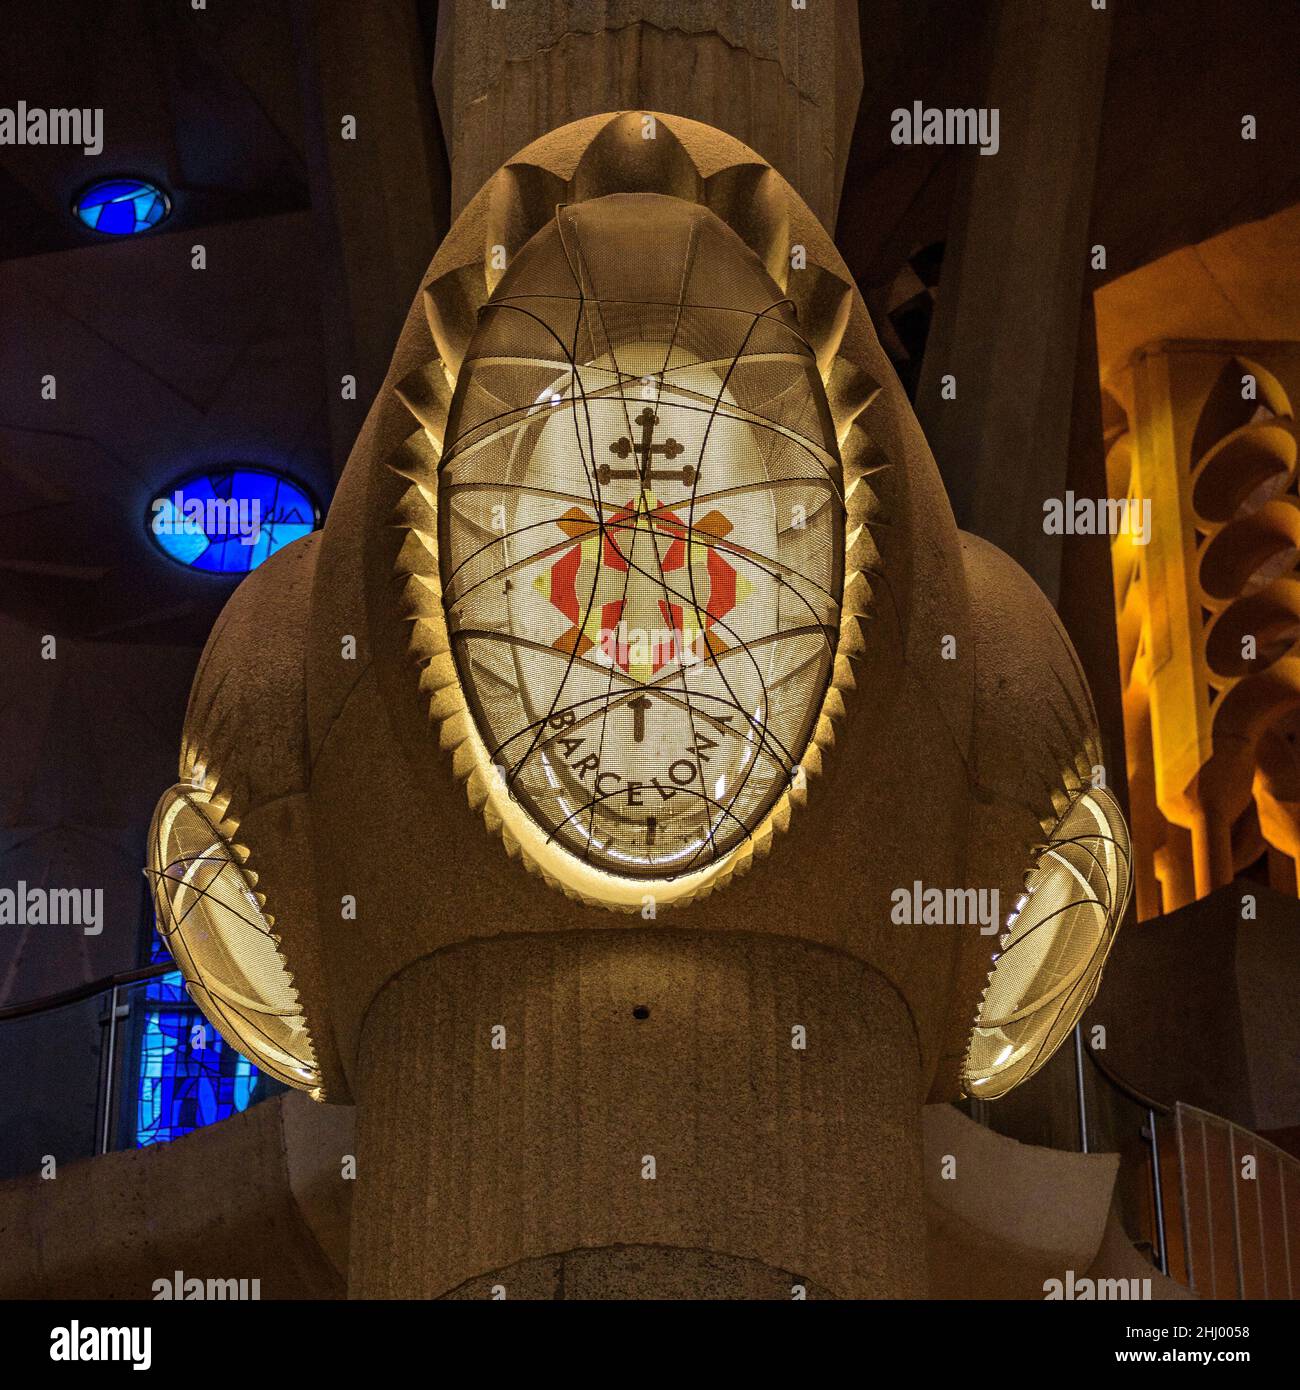 Particolare dell'illuminazione delle colonne nodi all'interno della Sagrada Familia (Barcellona, Catalogna, Spagna) ESP: Iluminación del templo de la S. Familia Foto Stock